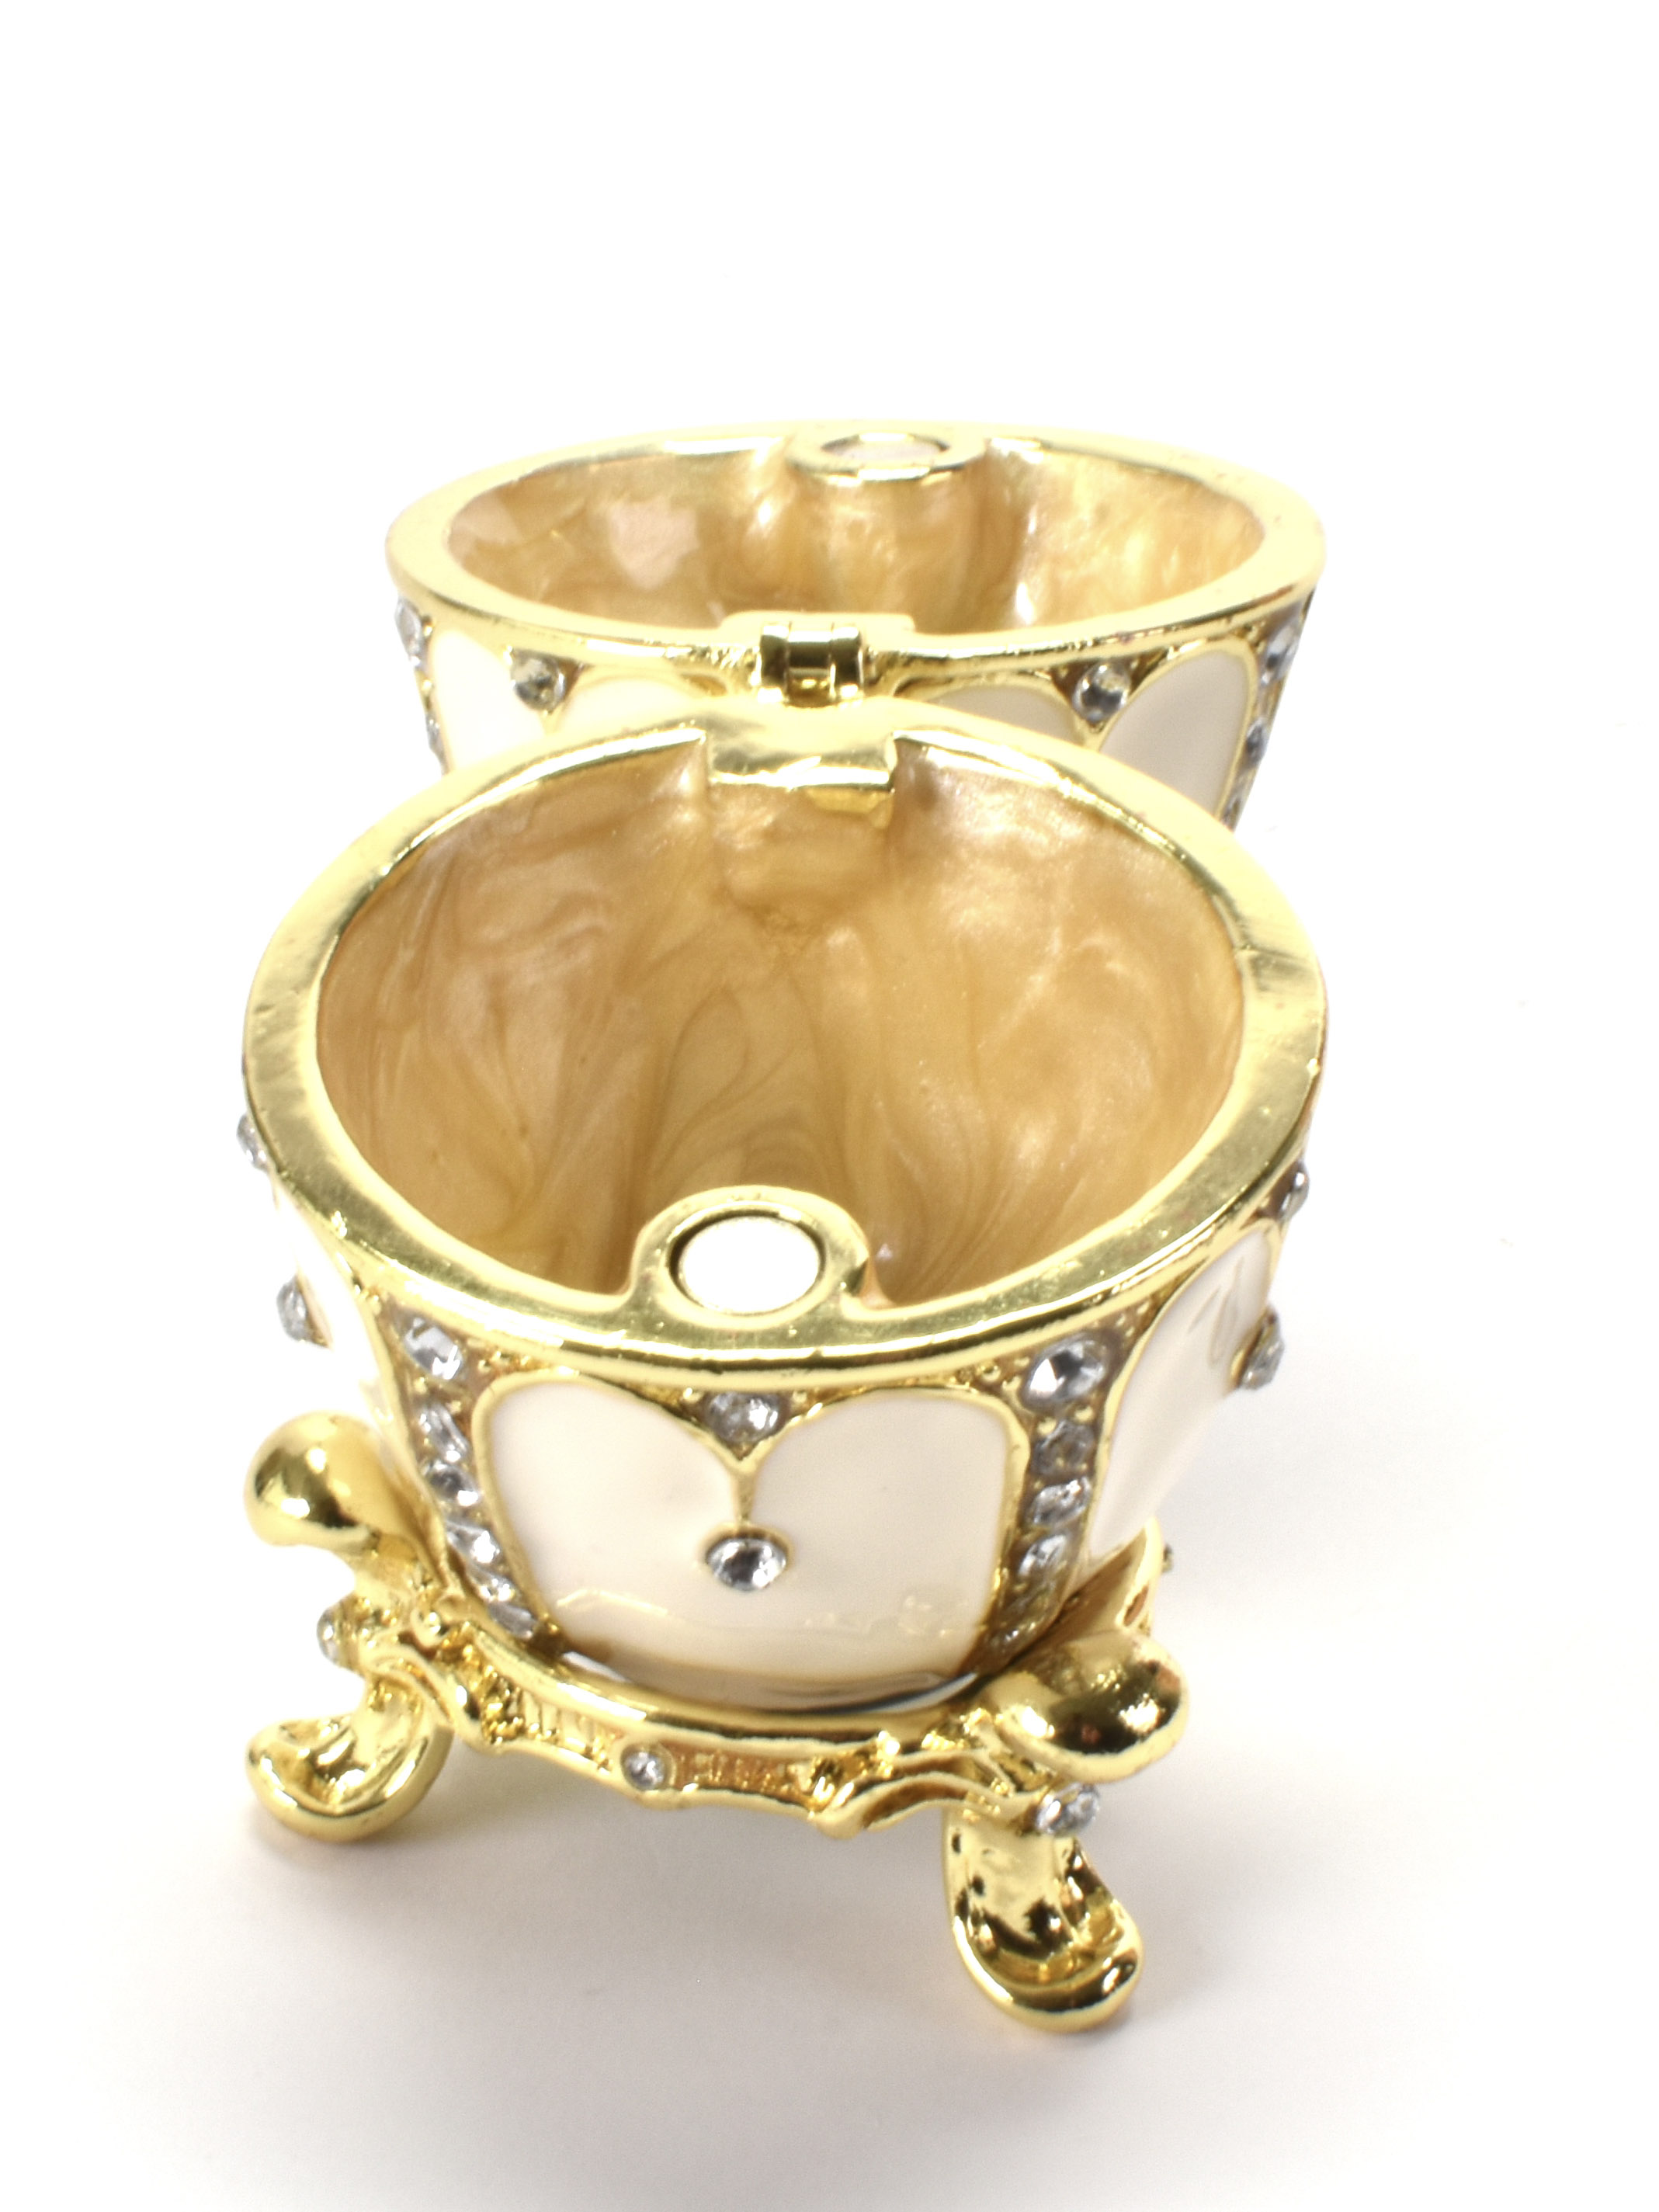 Ei op voet - in doosje - Fabergé stijl, van de Czars Collectie